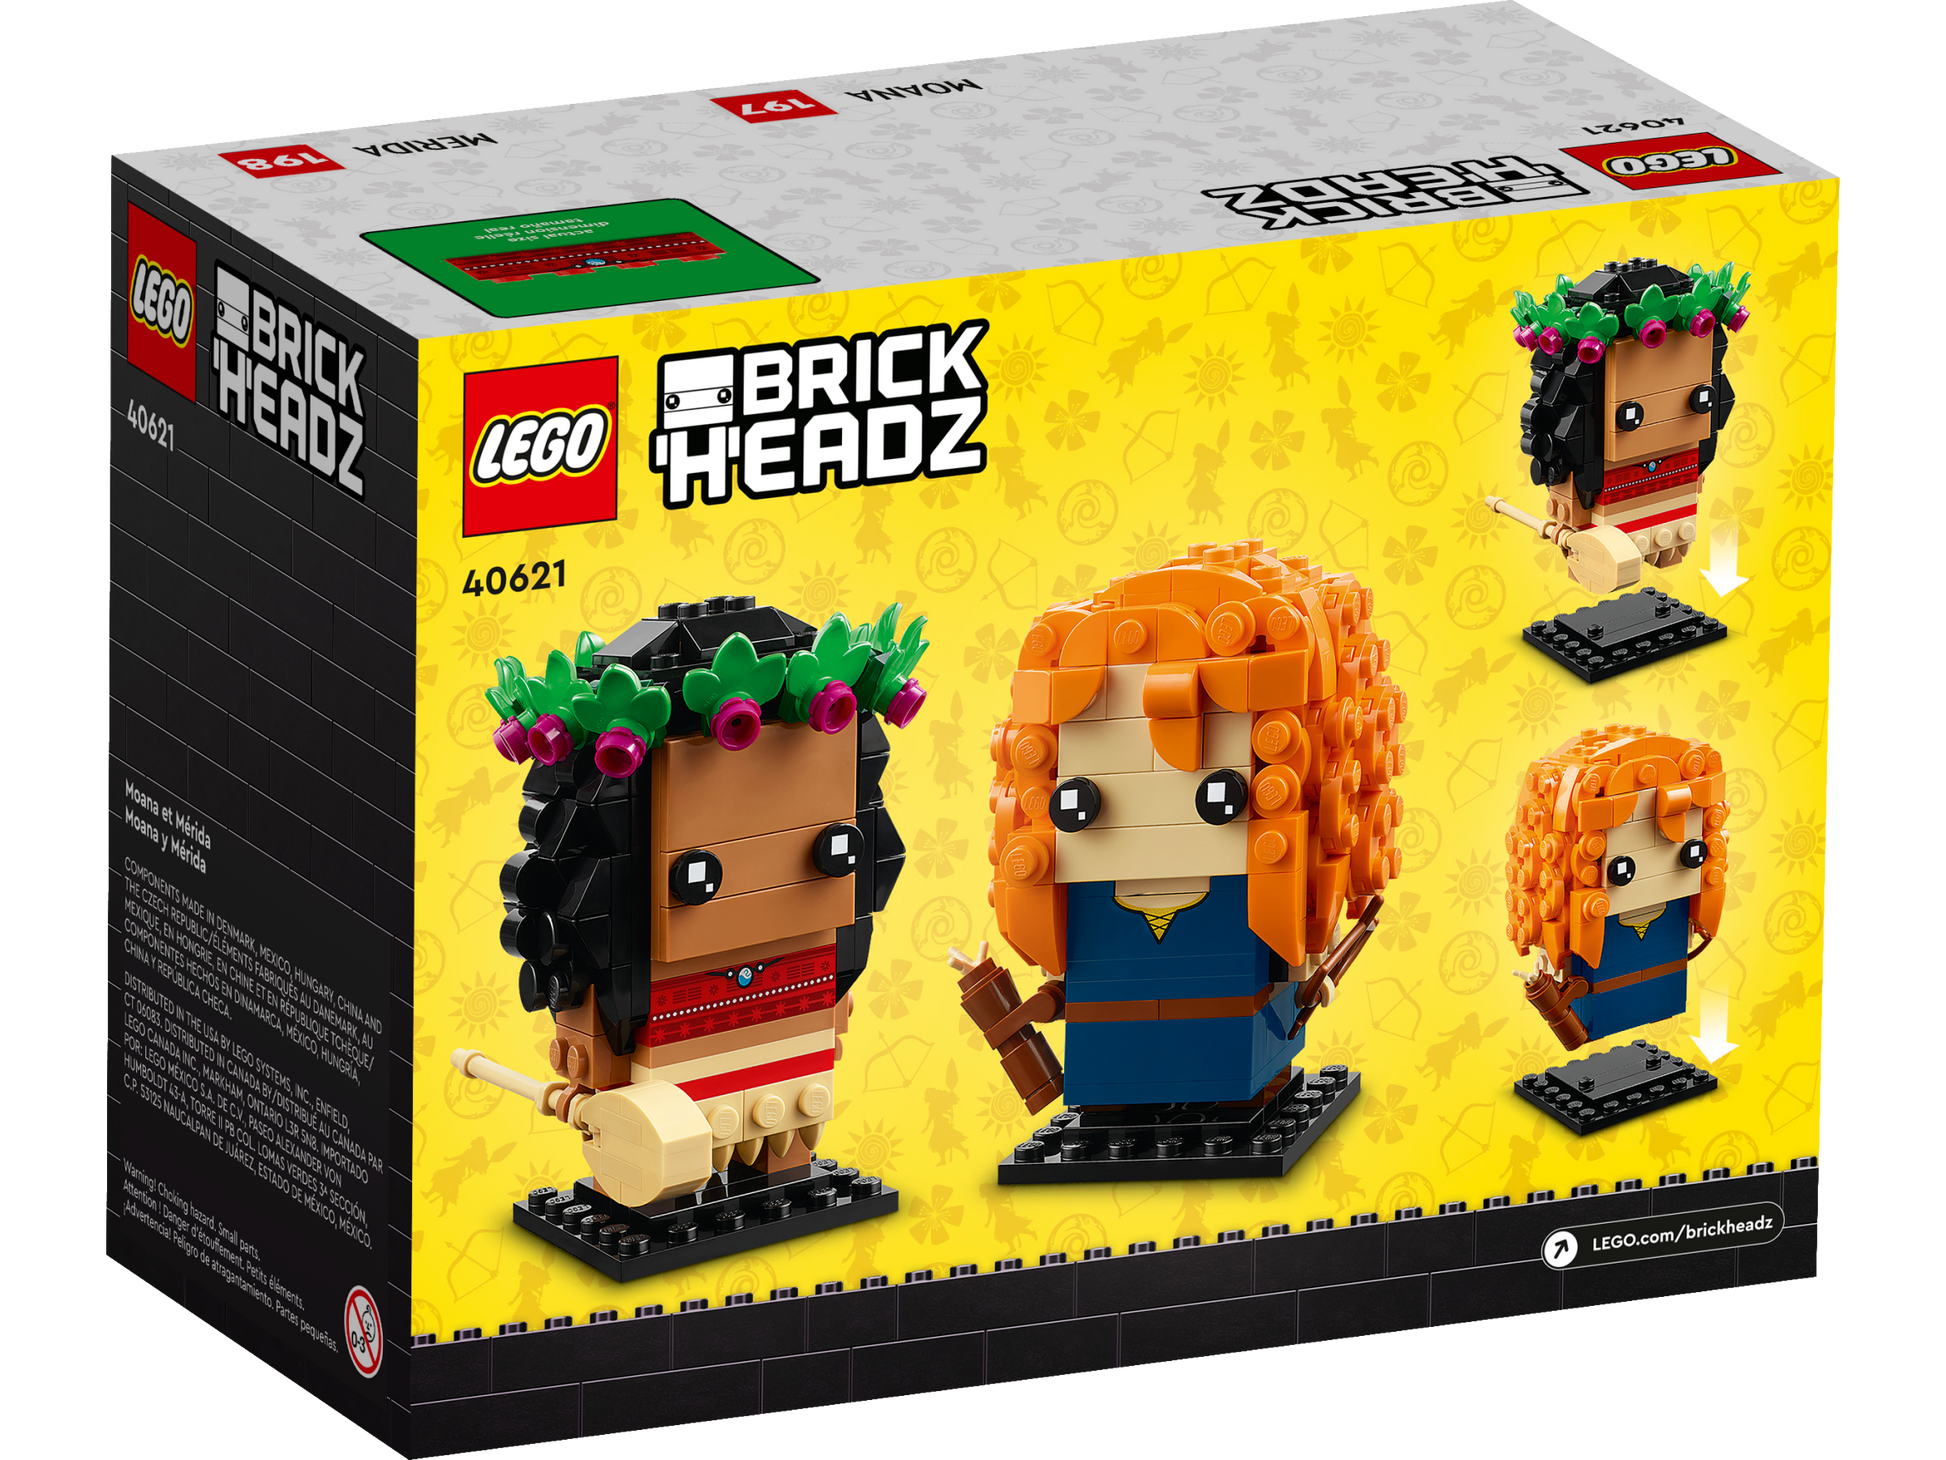 LEGO® set 40621